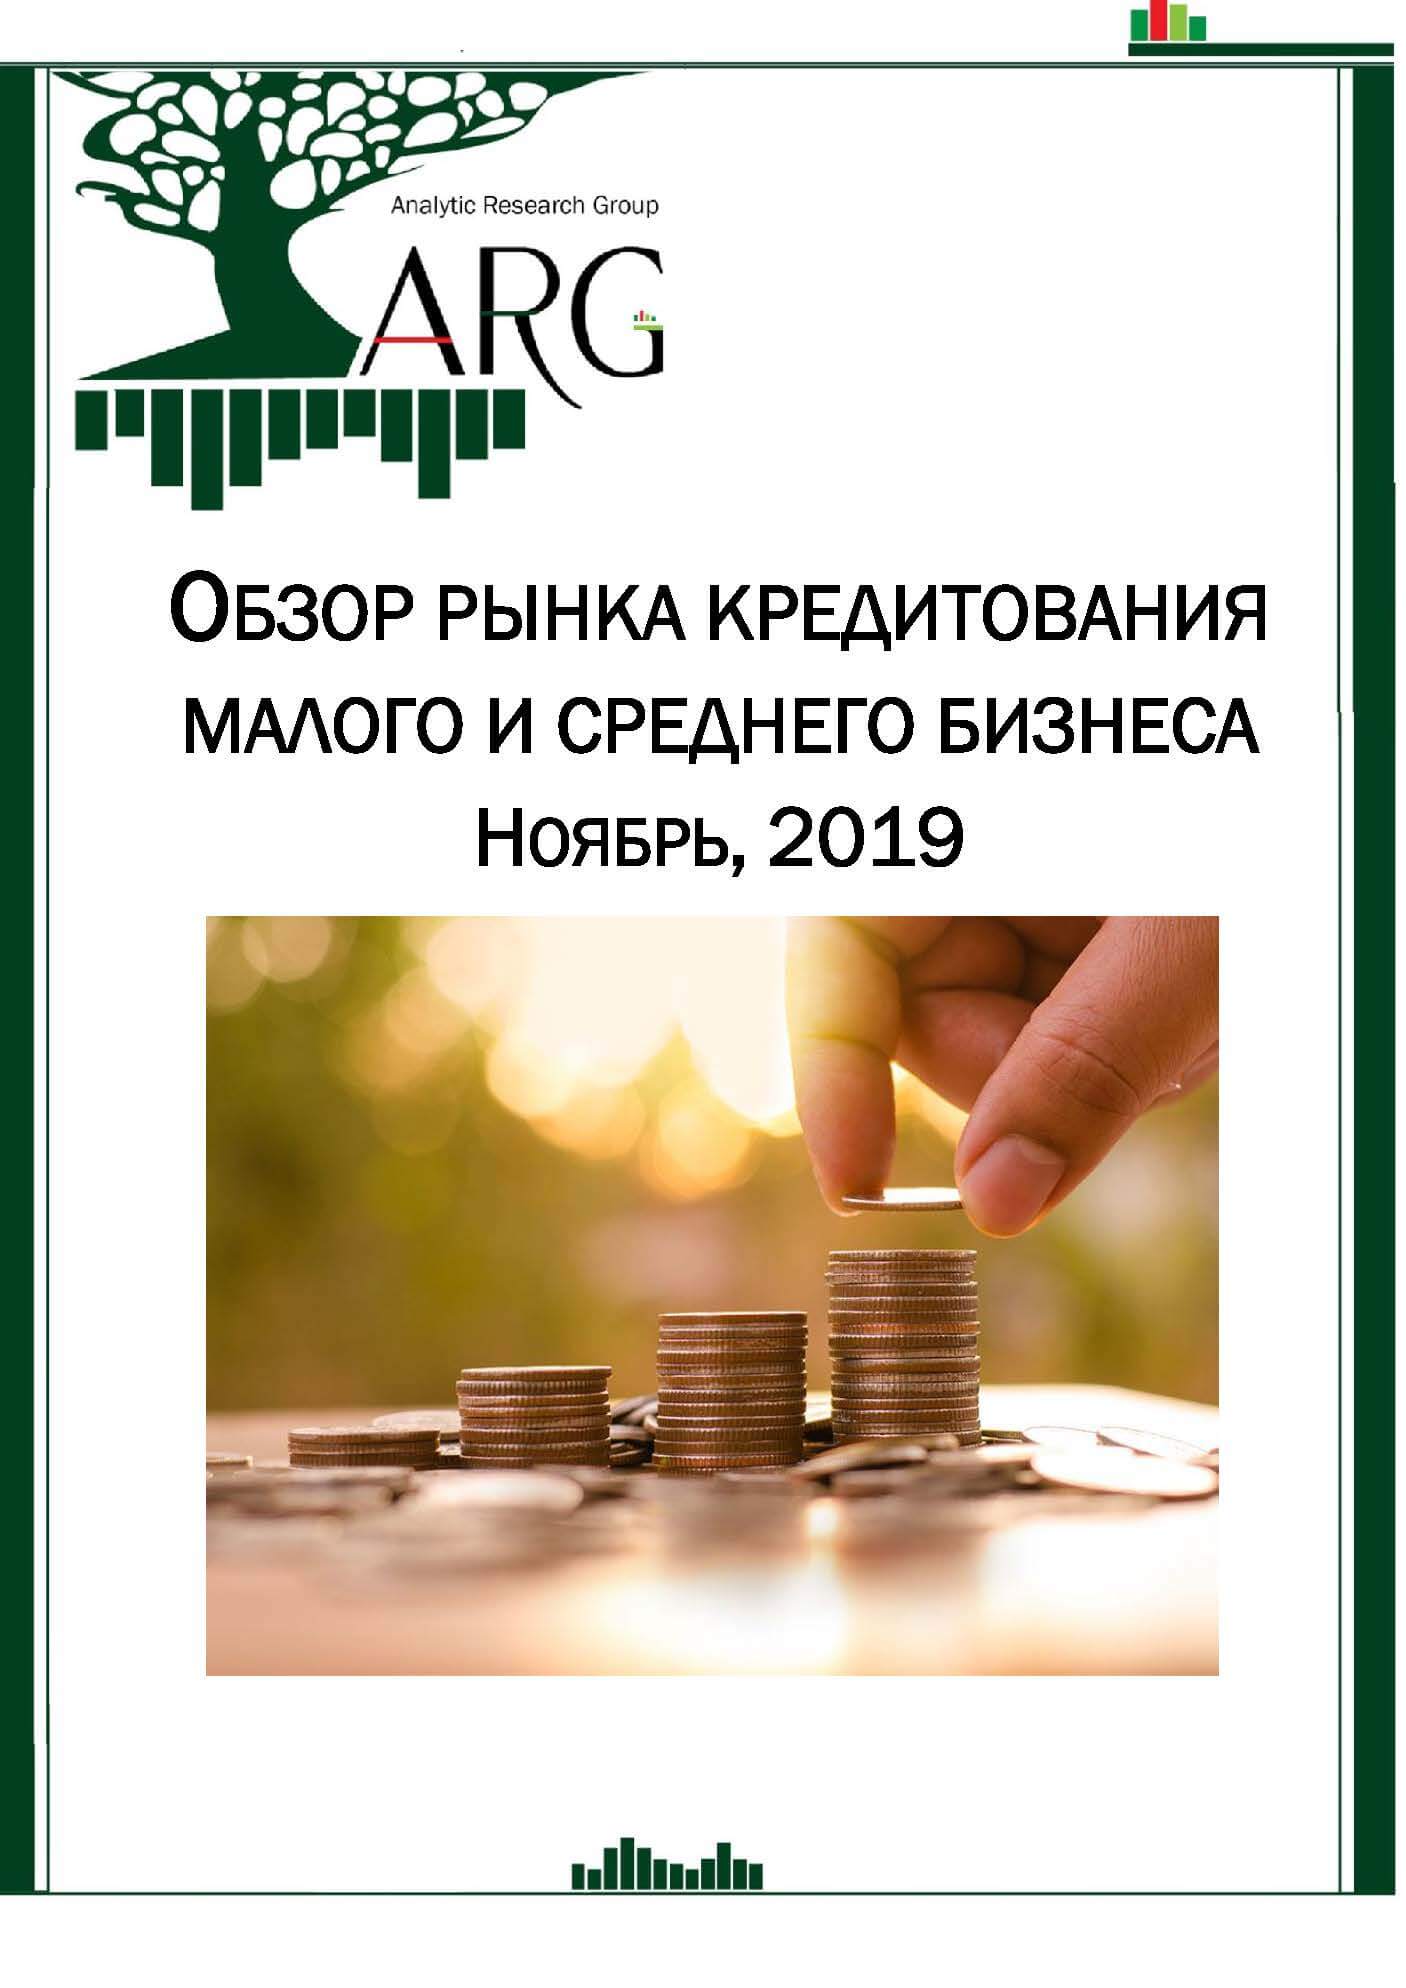 кредиты для малого бизнеса без залога и поручителей в москве